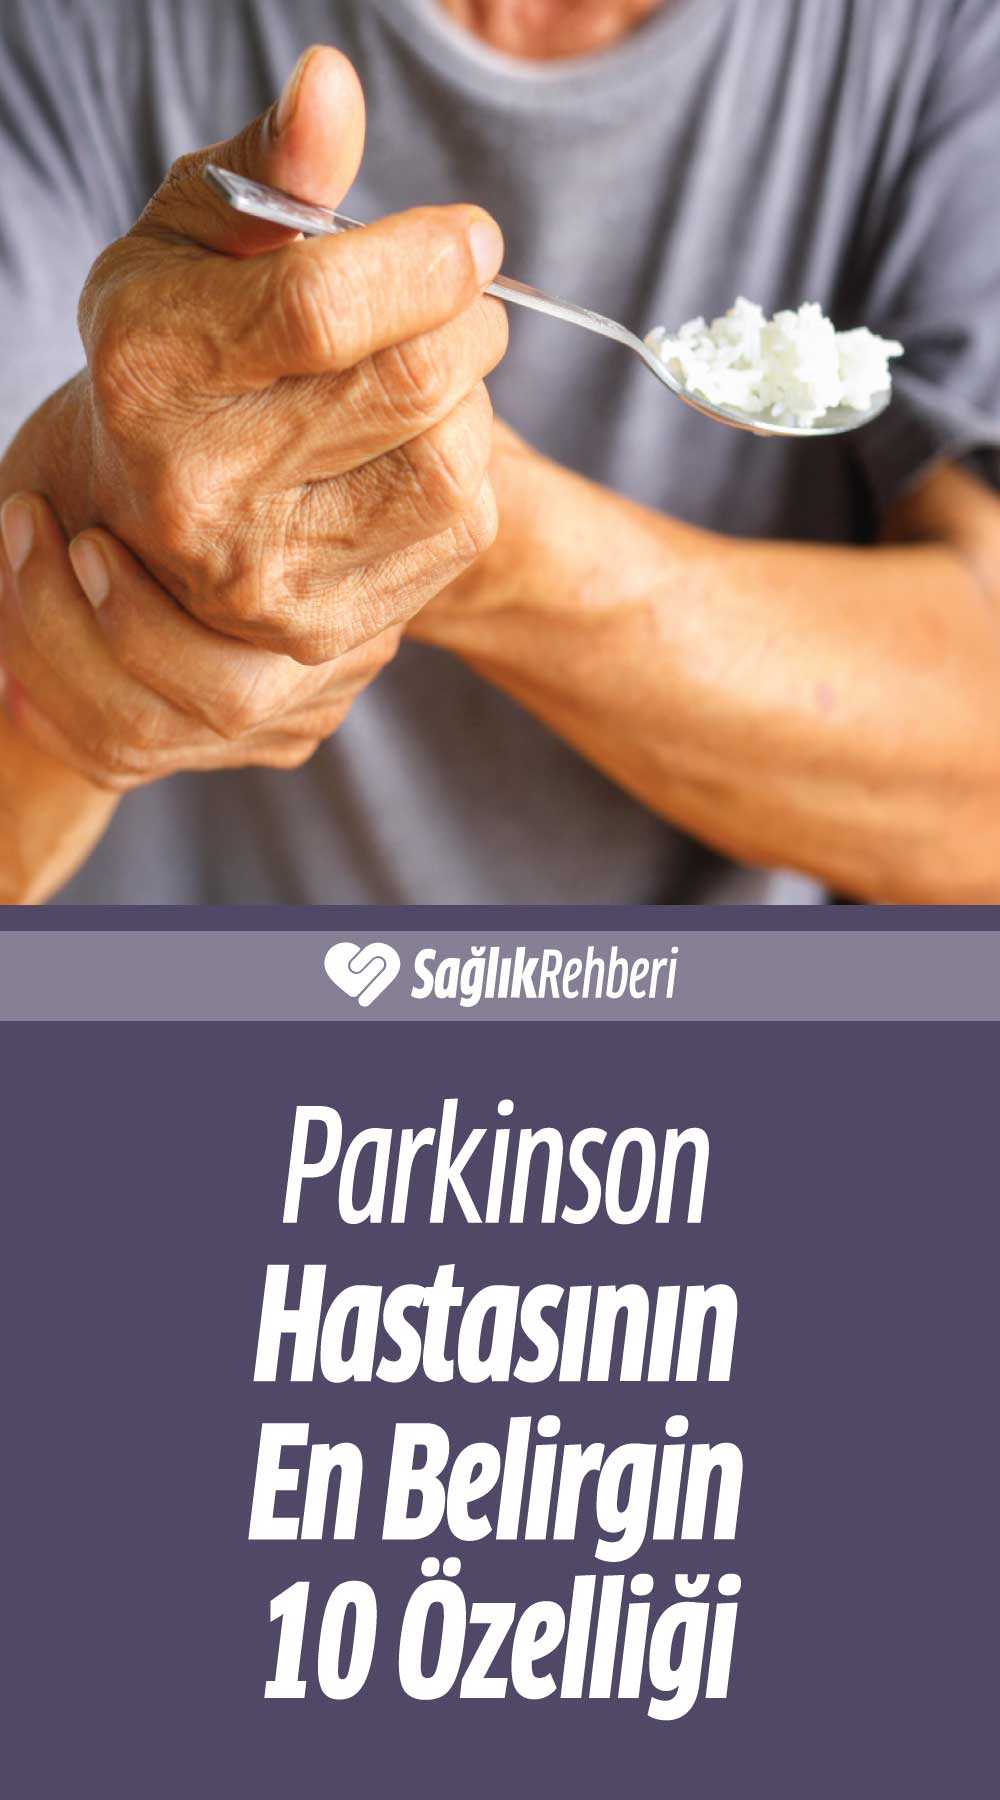 Parkinson Hastasının En Belirgin 10 Özelliği Nedir?